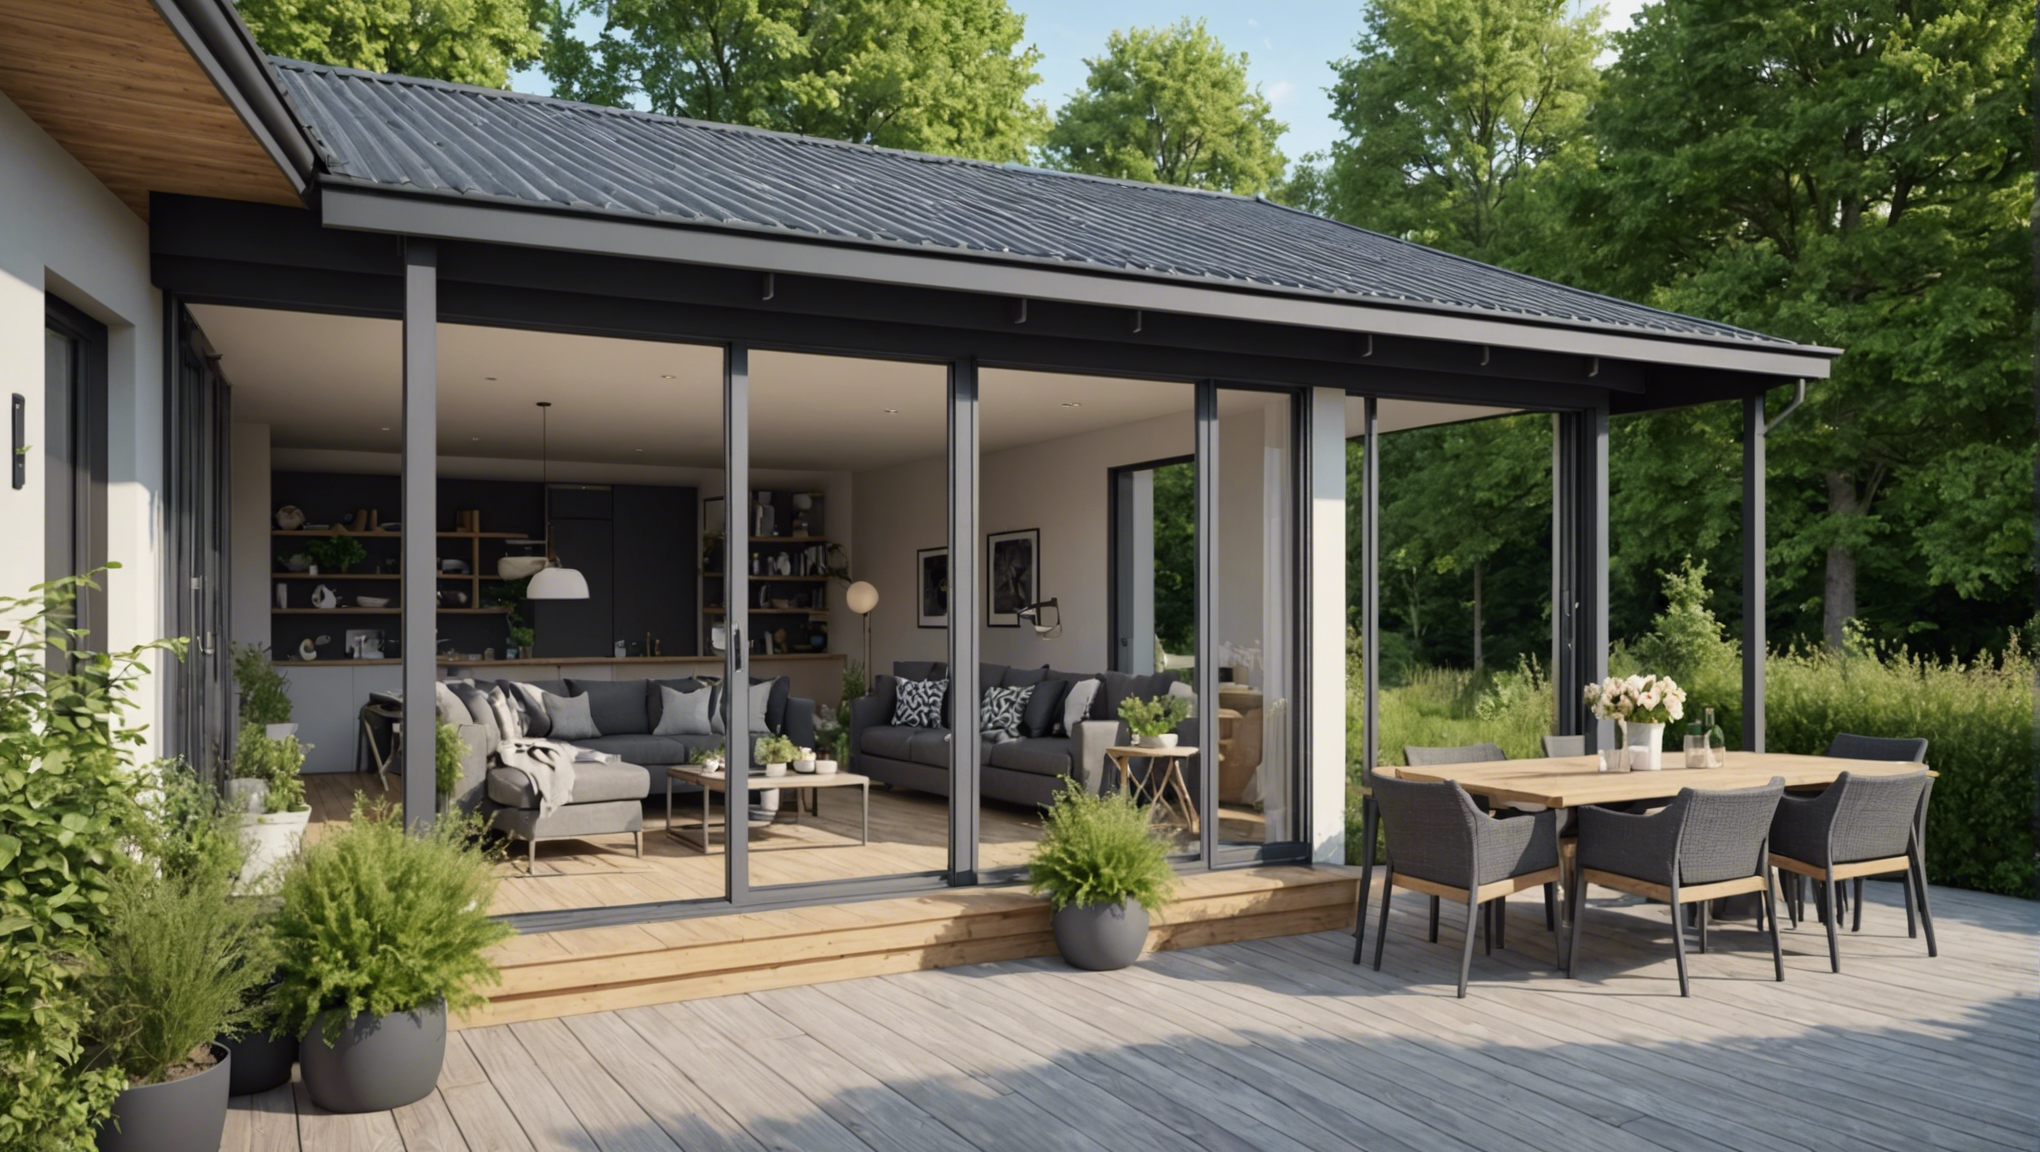 découvrez les avantages de la véranda et de la terrasse pour aménager votre espace extérieur. trouvez le meilleur choix pour profiter au maximum de votre outdoor !